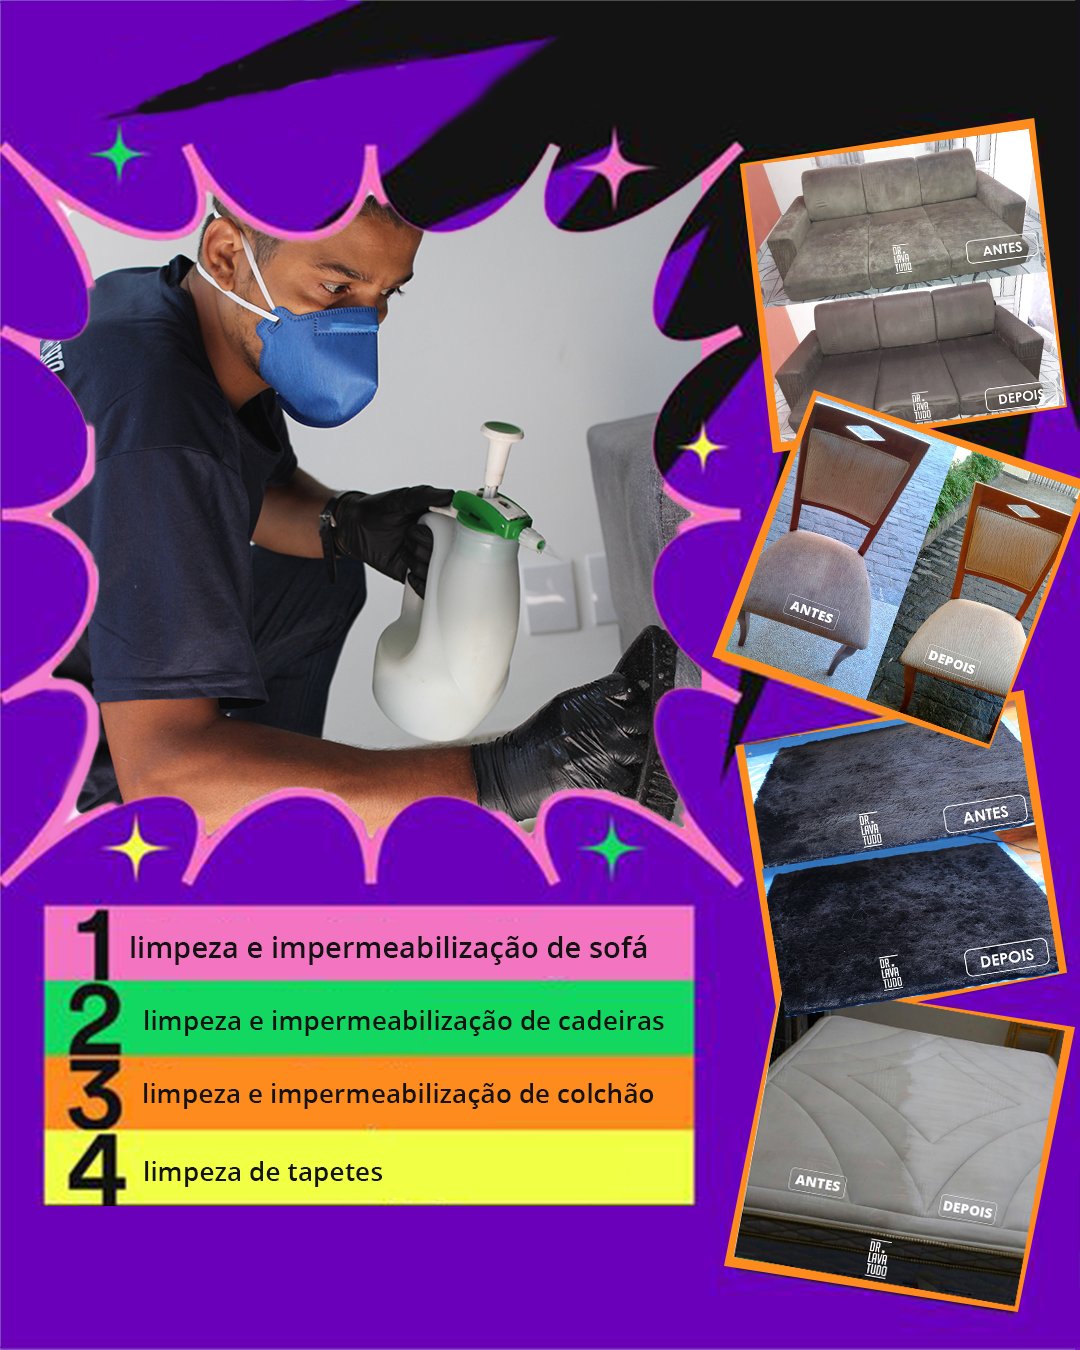 Dr. Lava Tudo: Limpeza de Sofá e Estofados